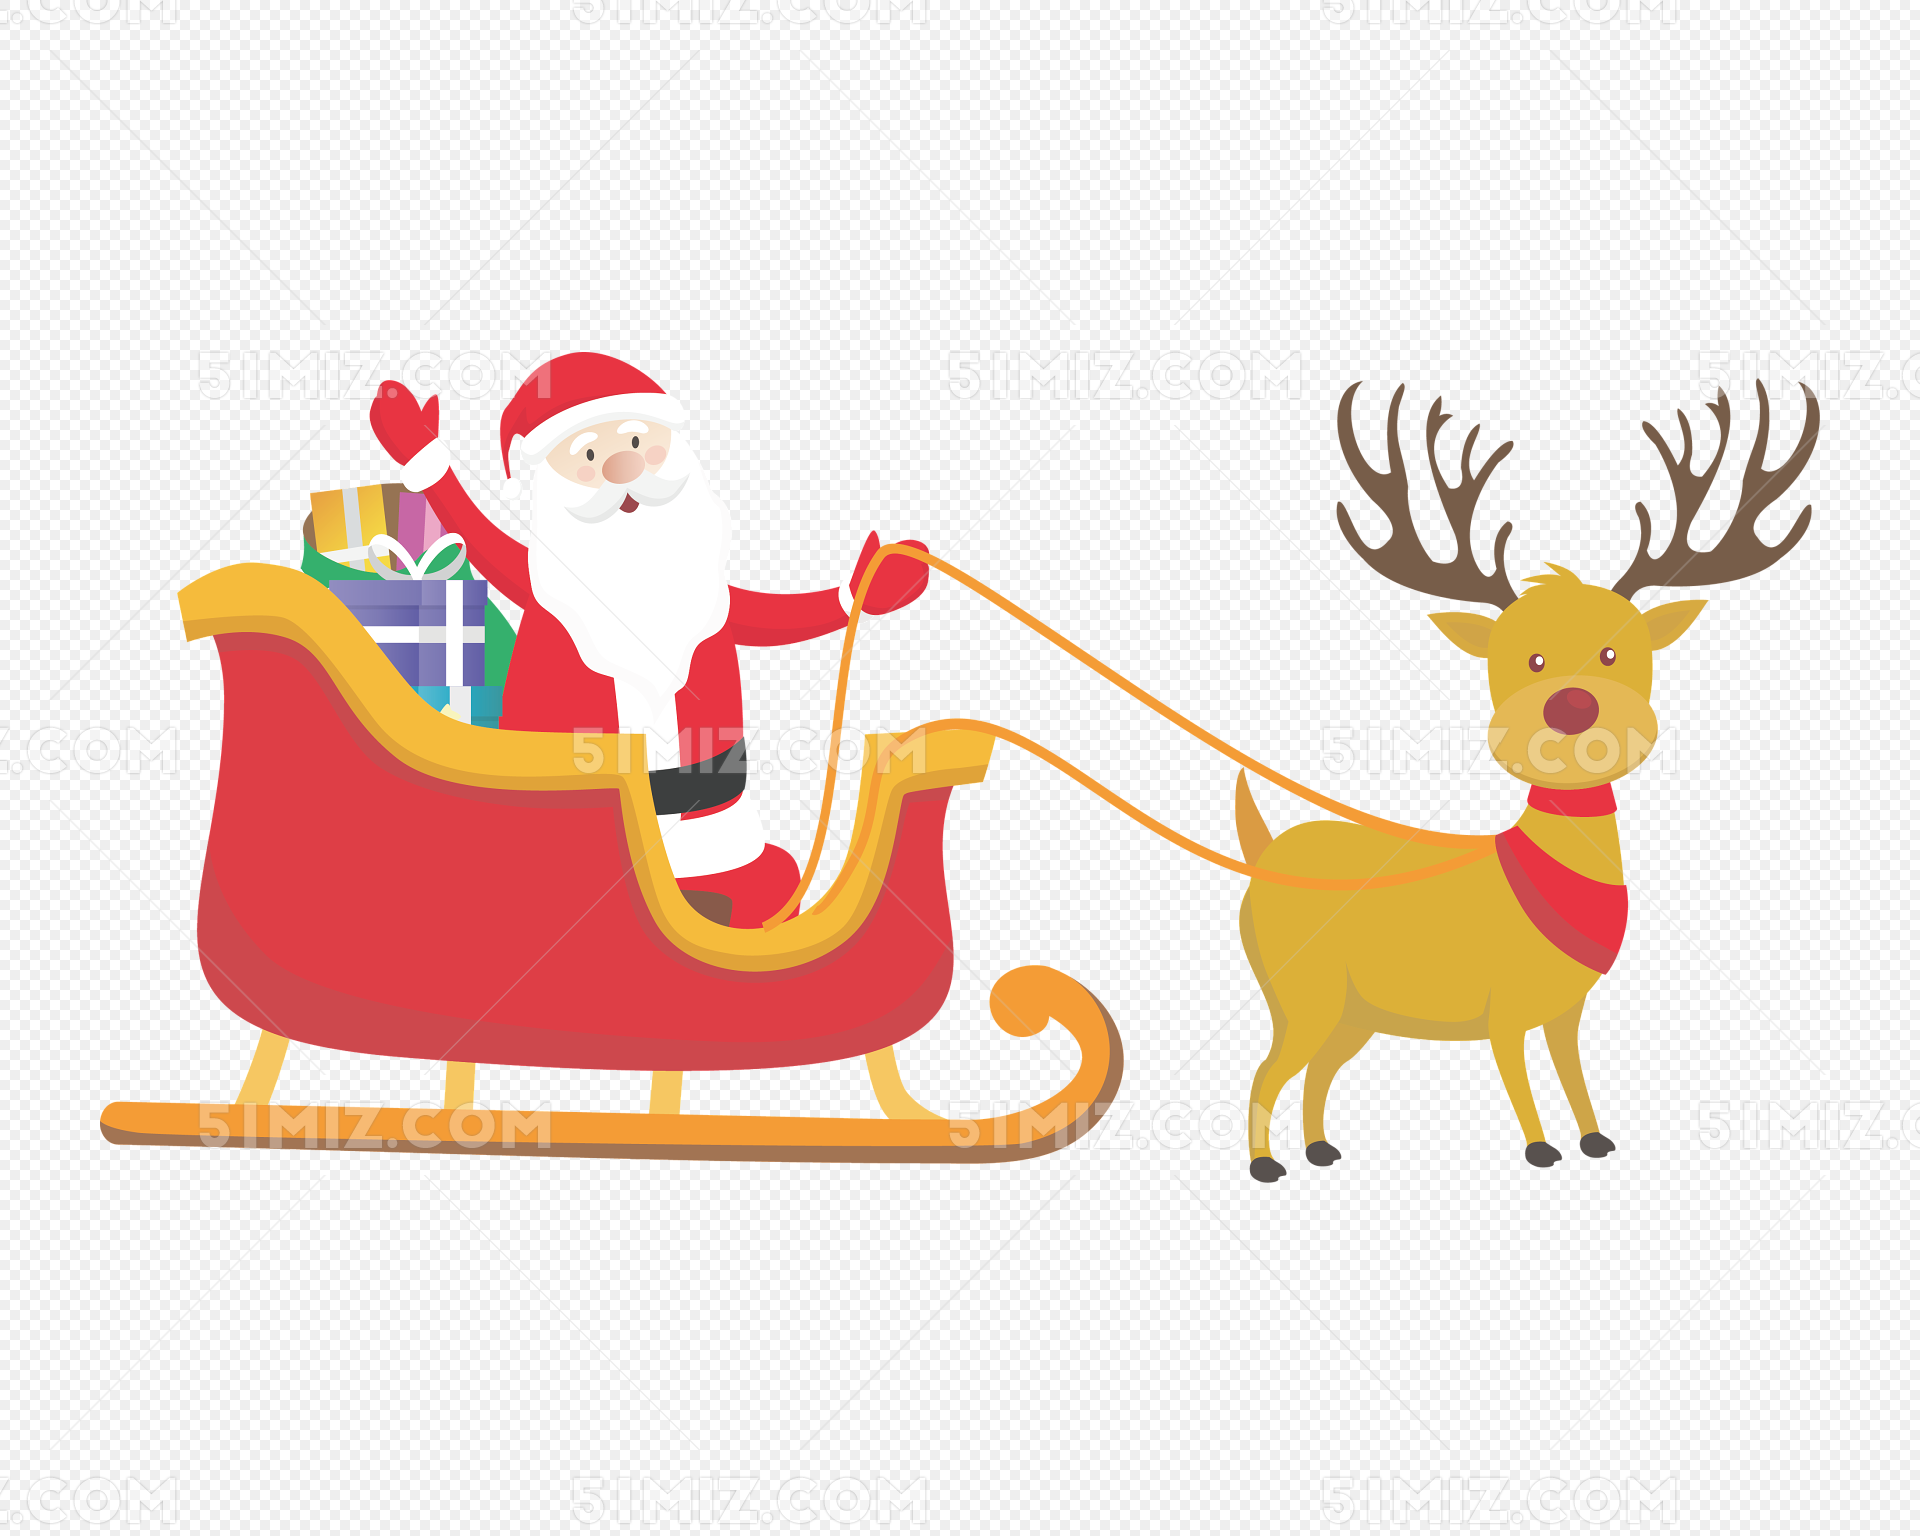 圣诞老人和驯鹿在天上飞驯鹿雪花卡通插画矢量素材